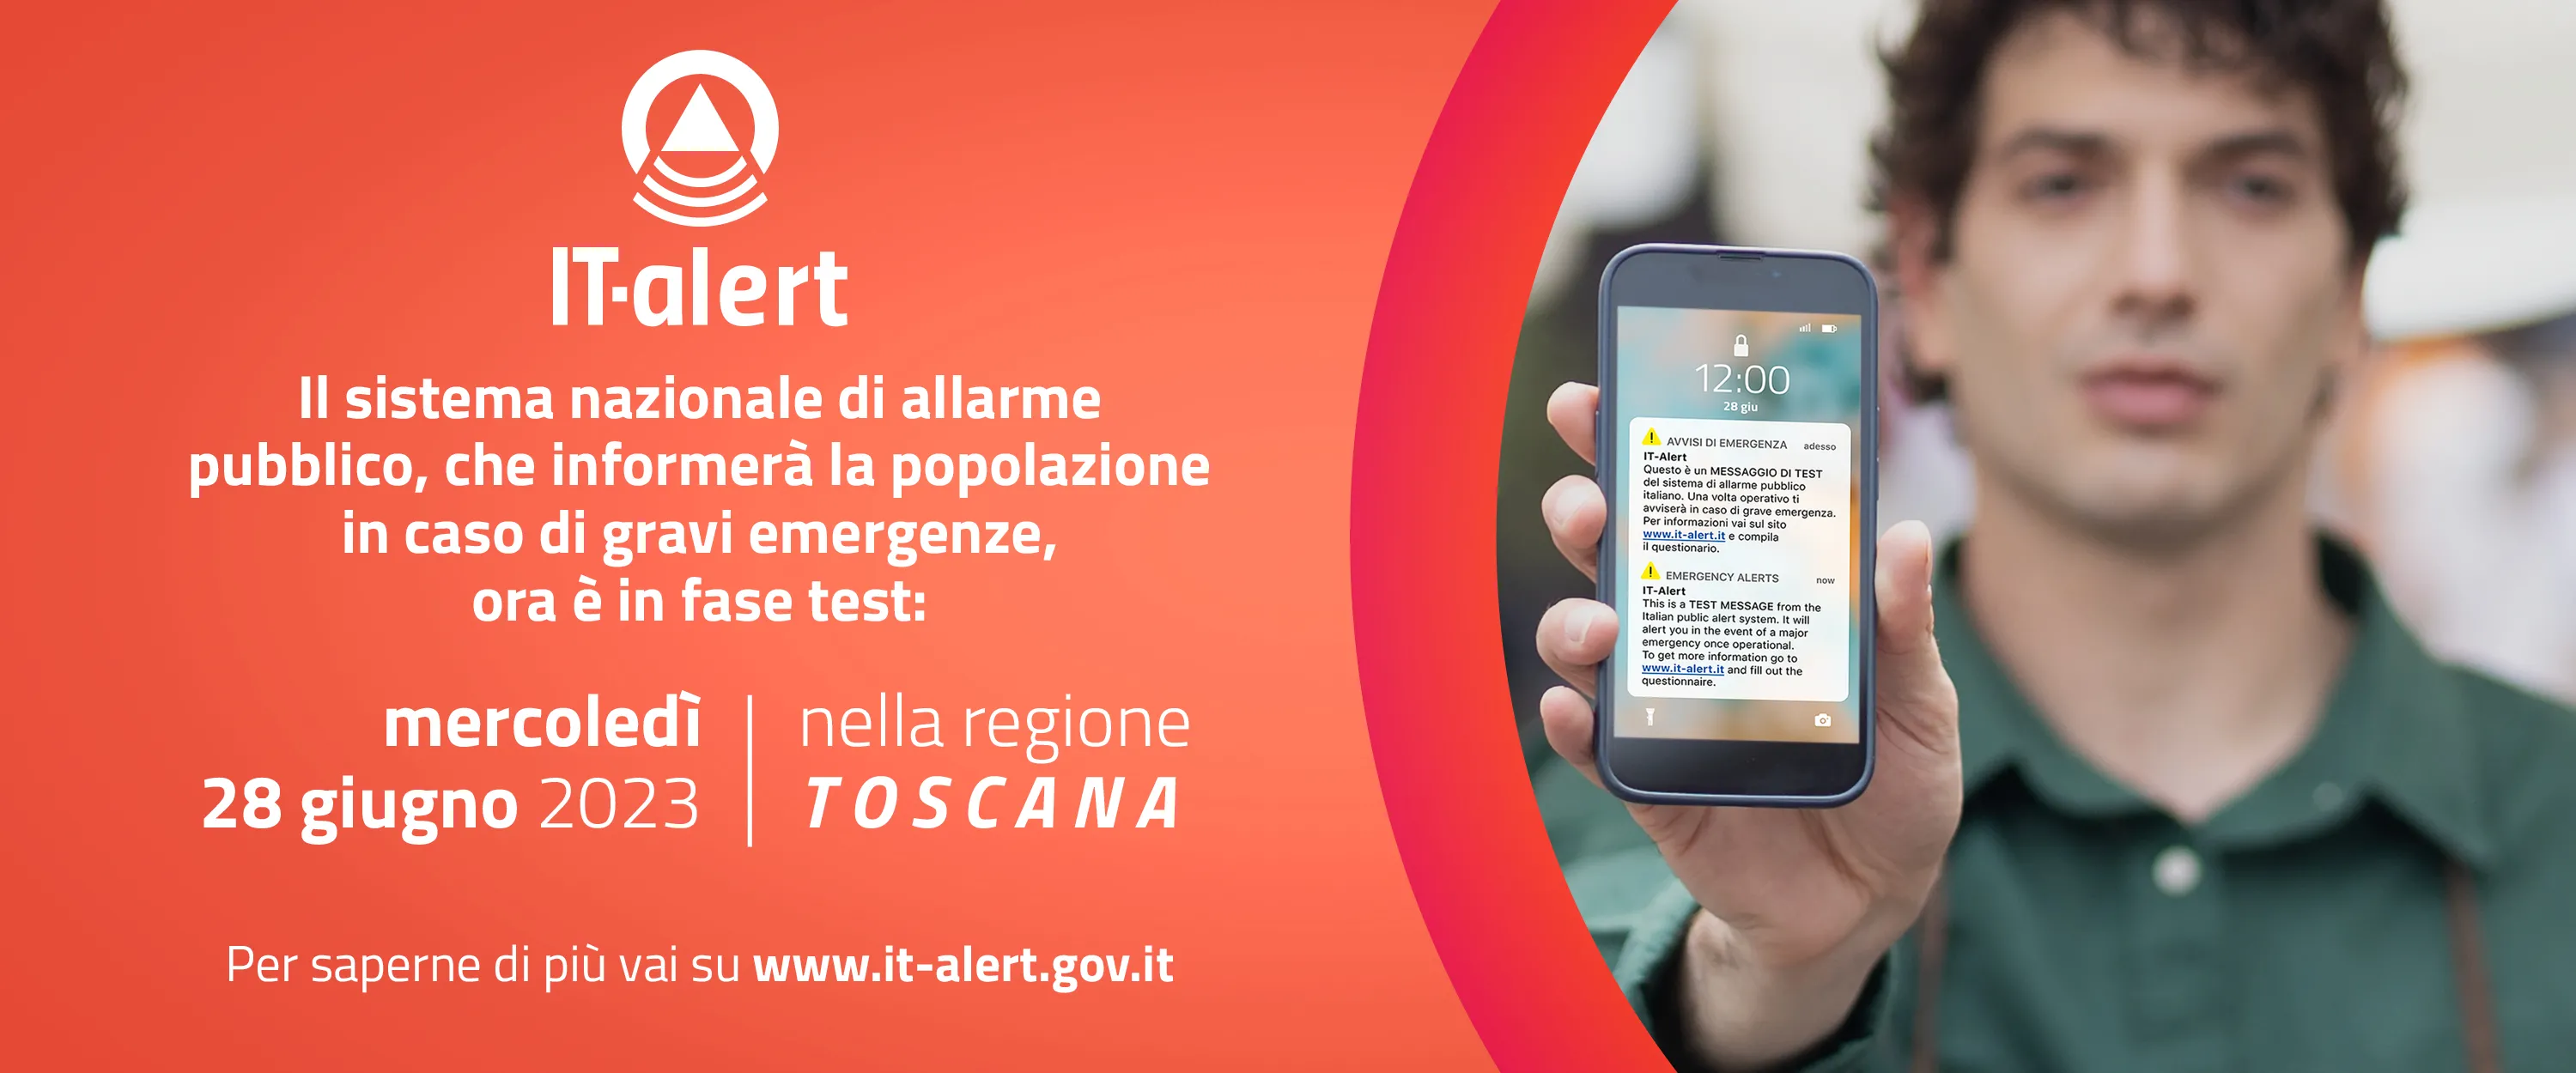 Avvio fase di sperimentazione piattaforma IT-Alert per la Toscana e trasmissione  materiale divulgativo.